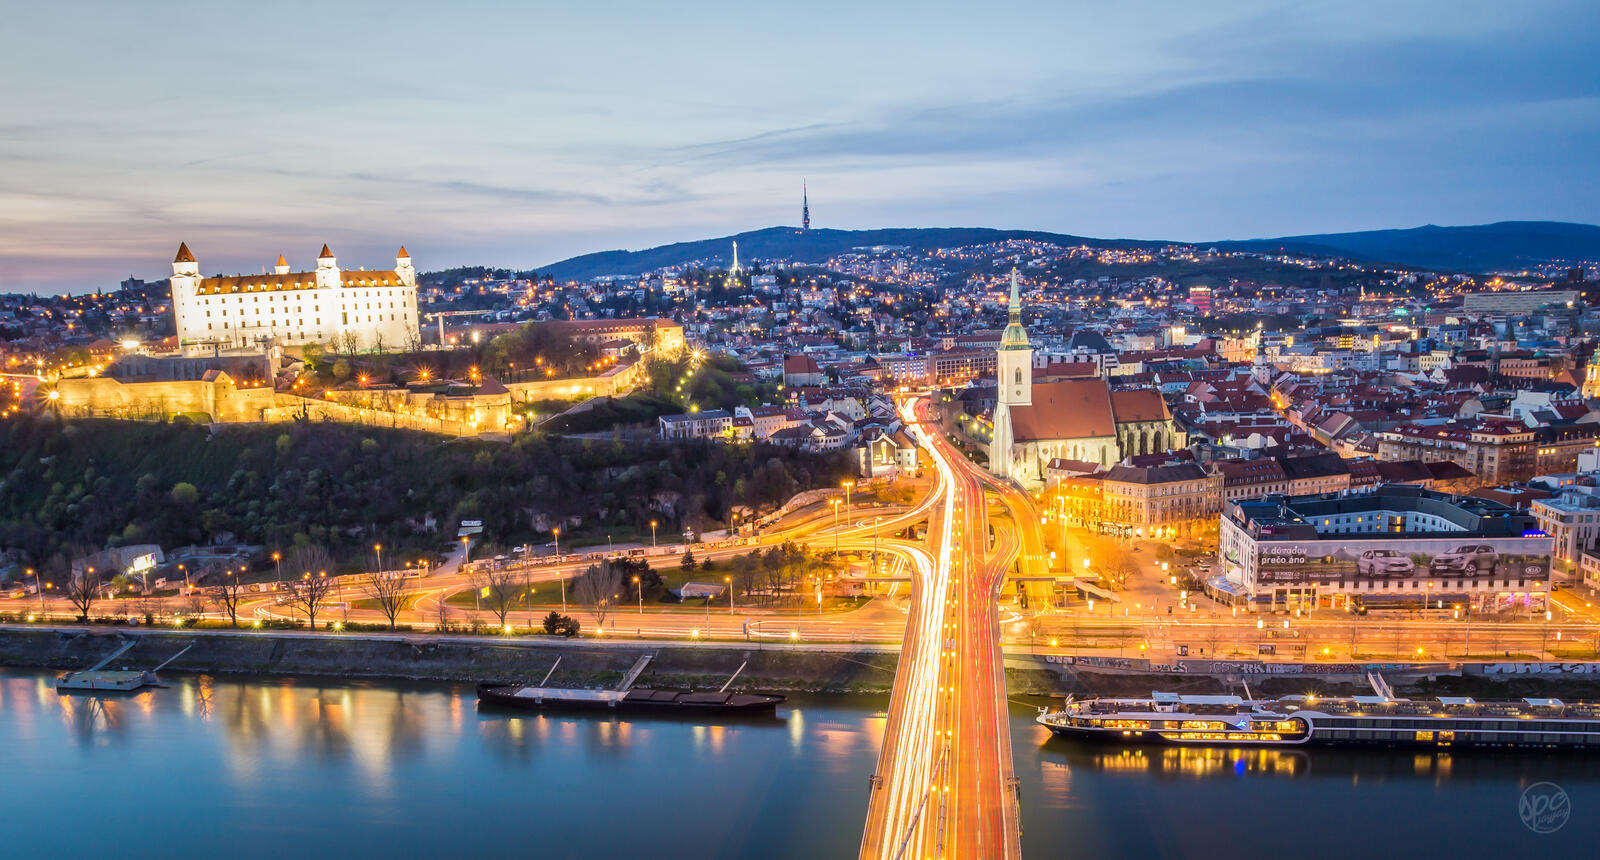 Обои Городской пейзаж Словакия Братислава на рабочий стол